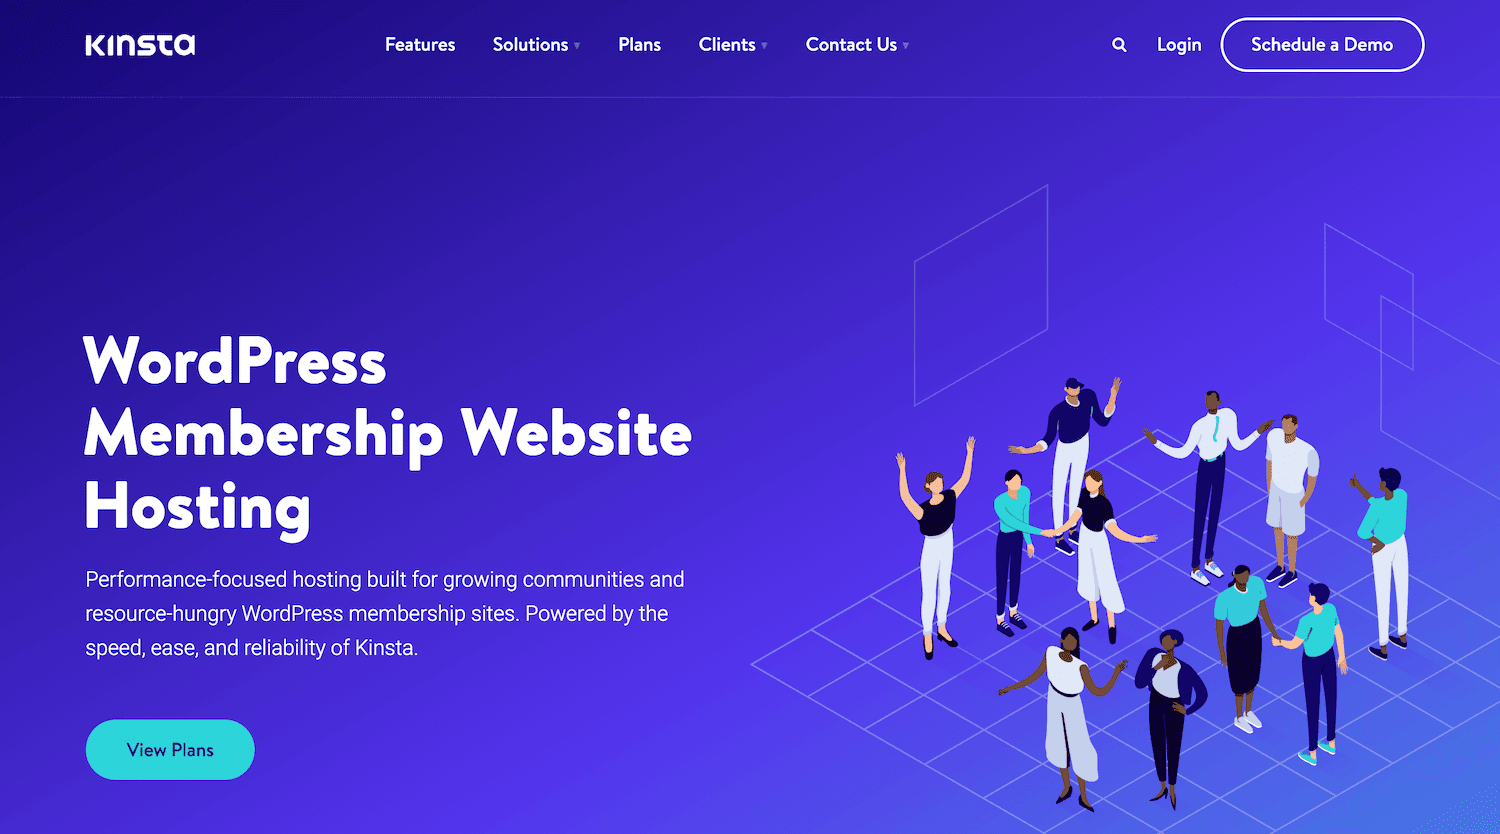 The Kinsta Membership Hosting page